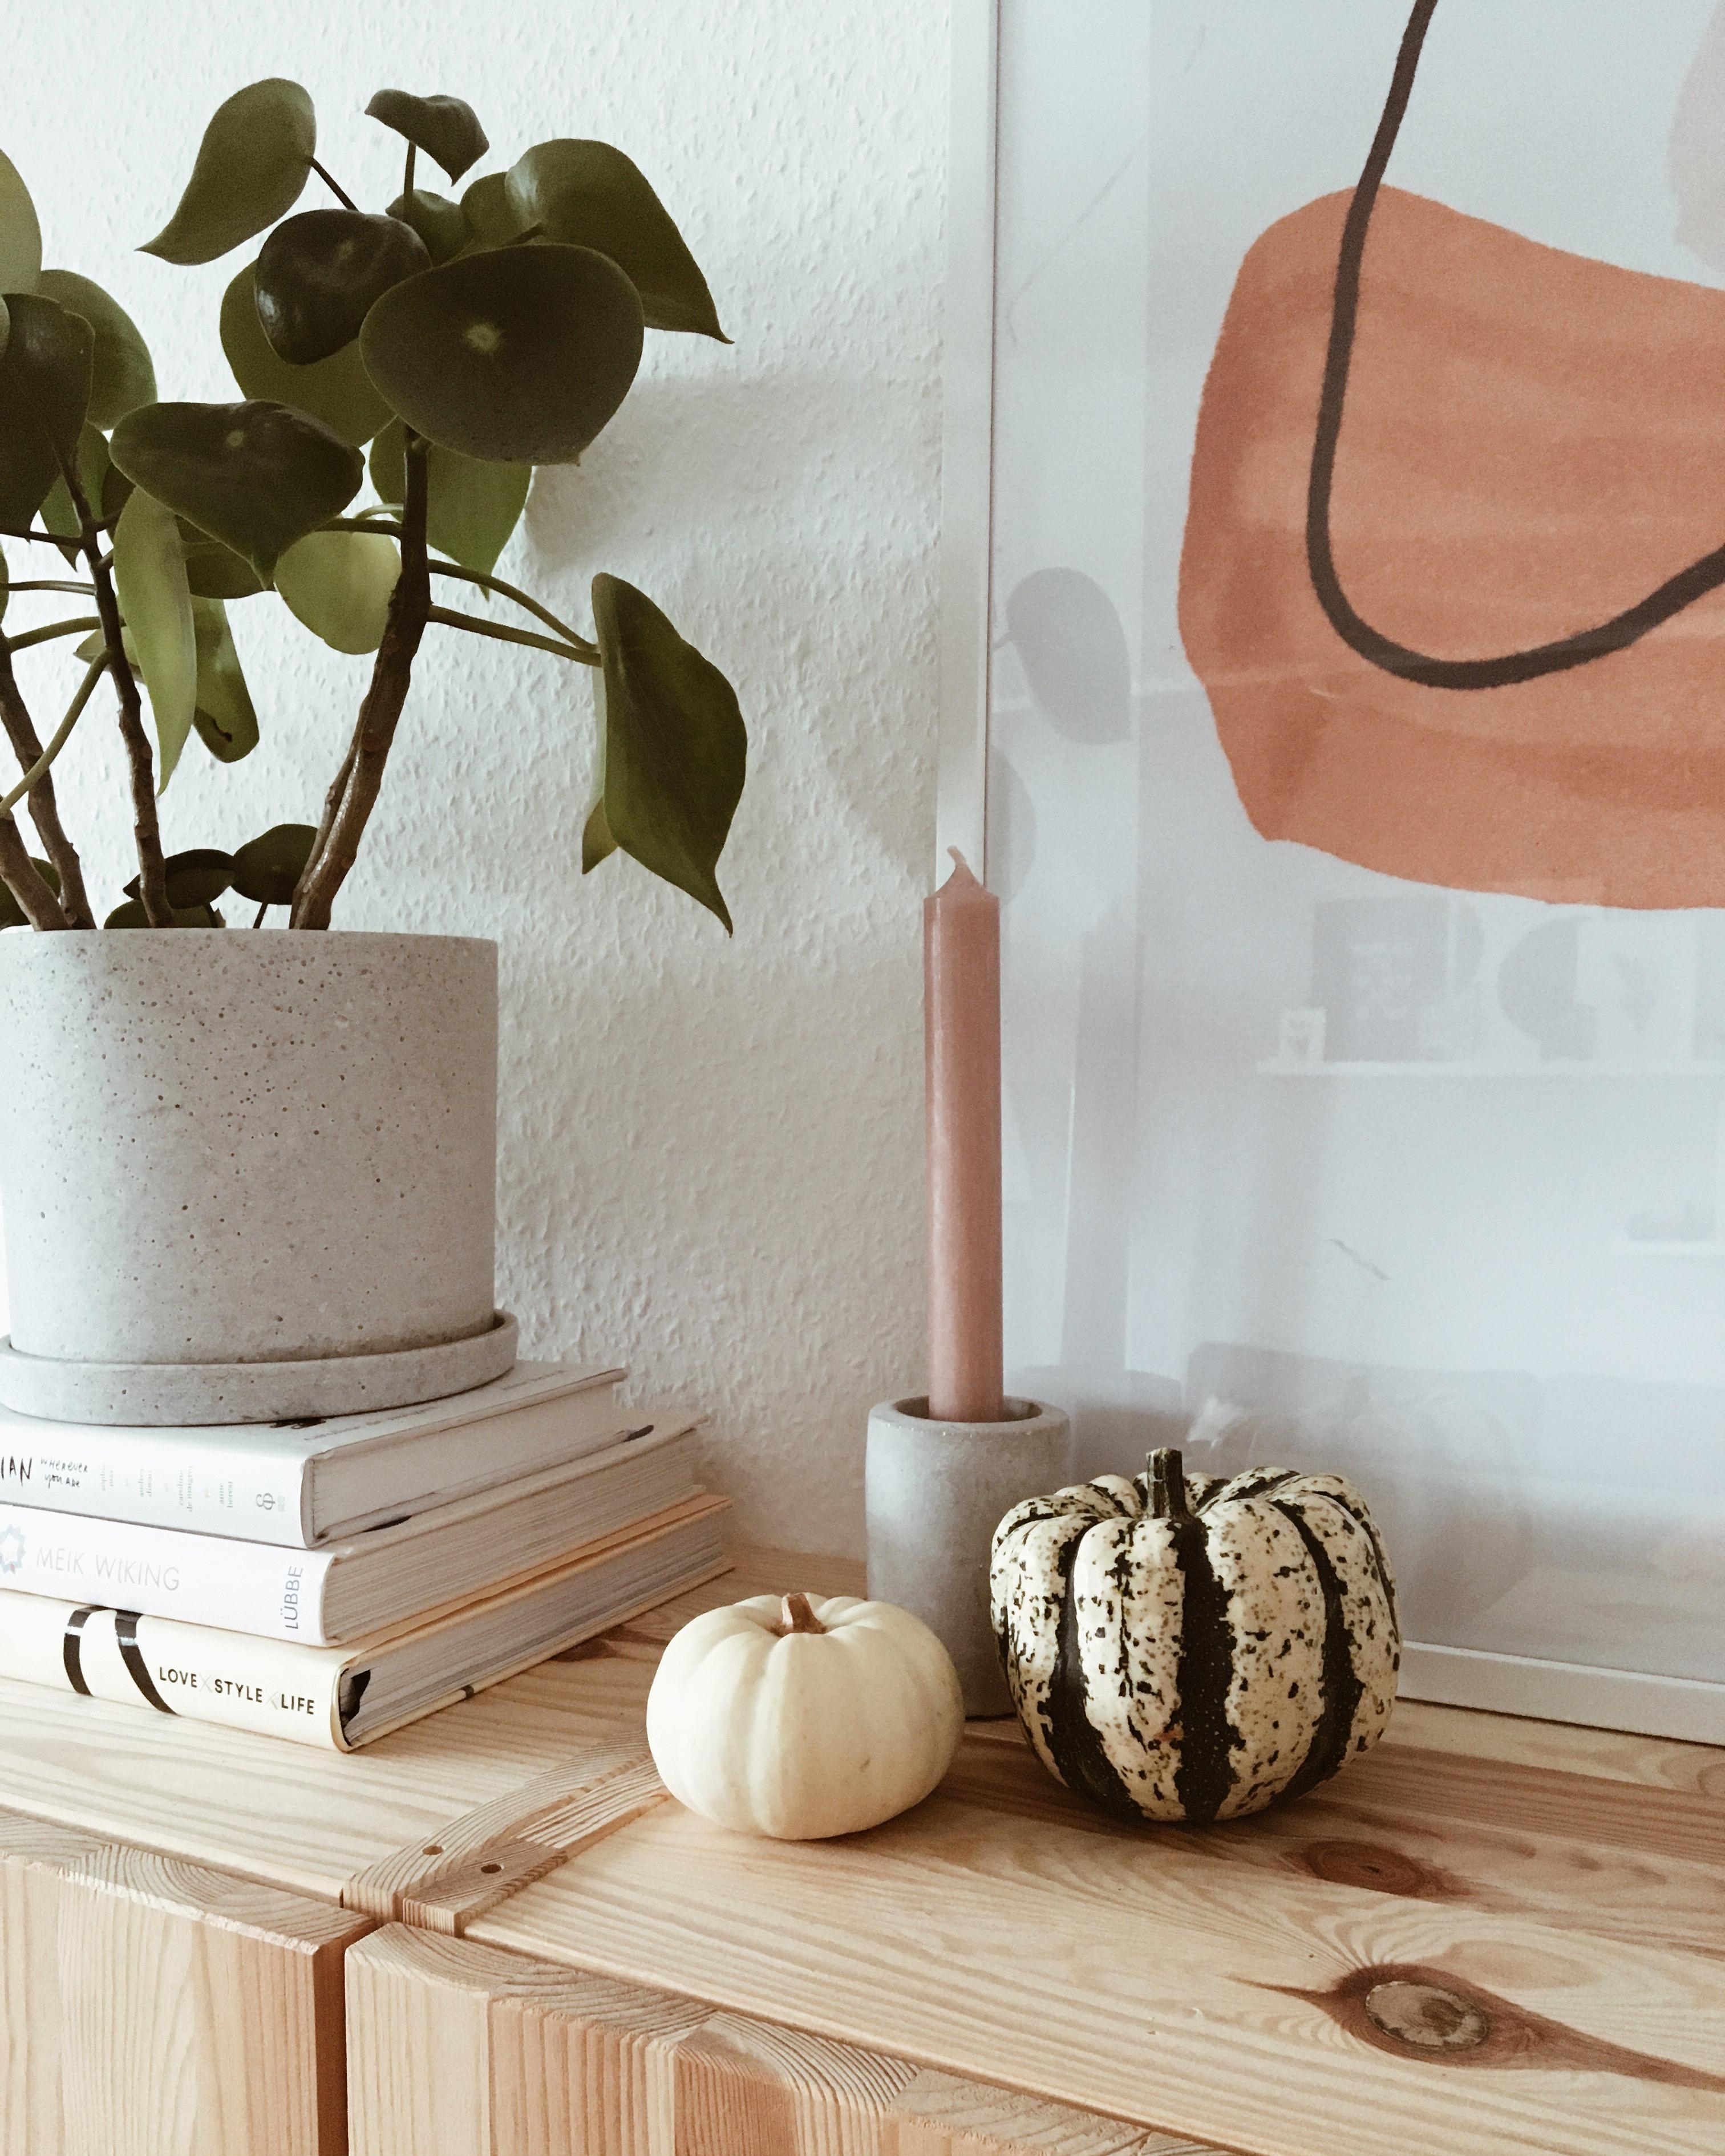 Happy Sunday 🧡
#autumndecor #autumncolours #livingroom #details #plants #home